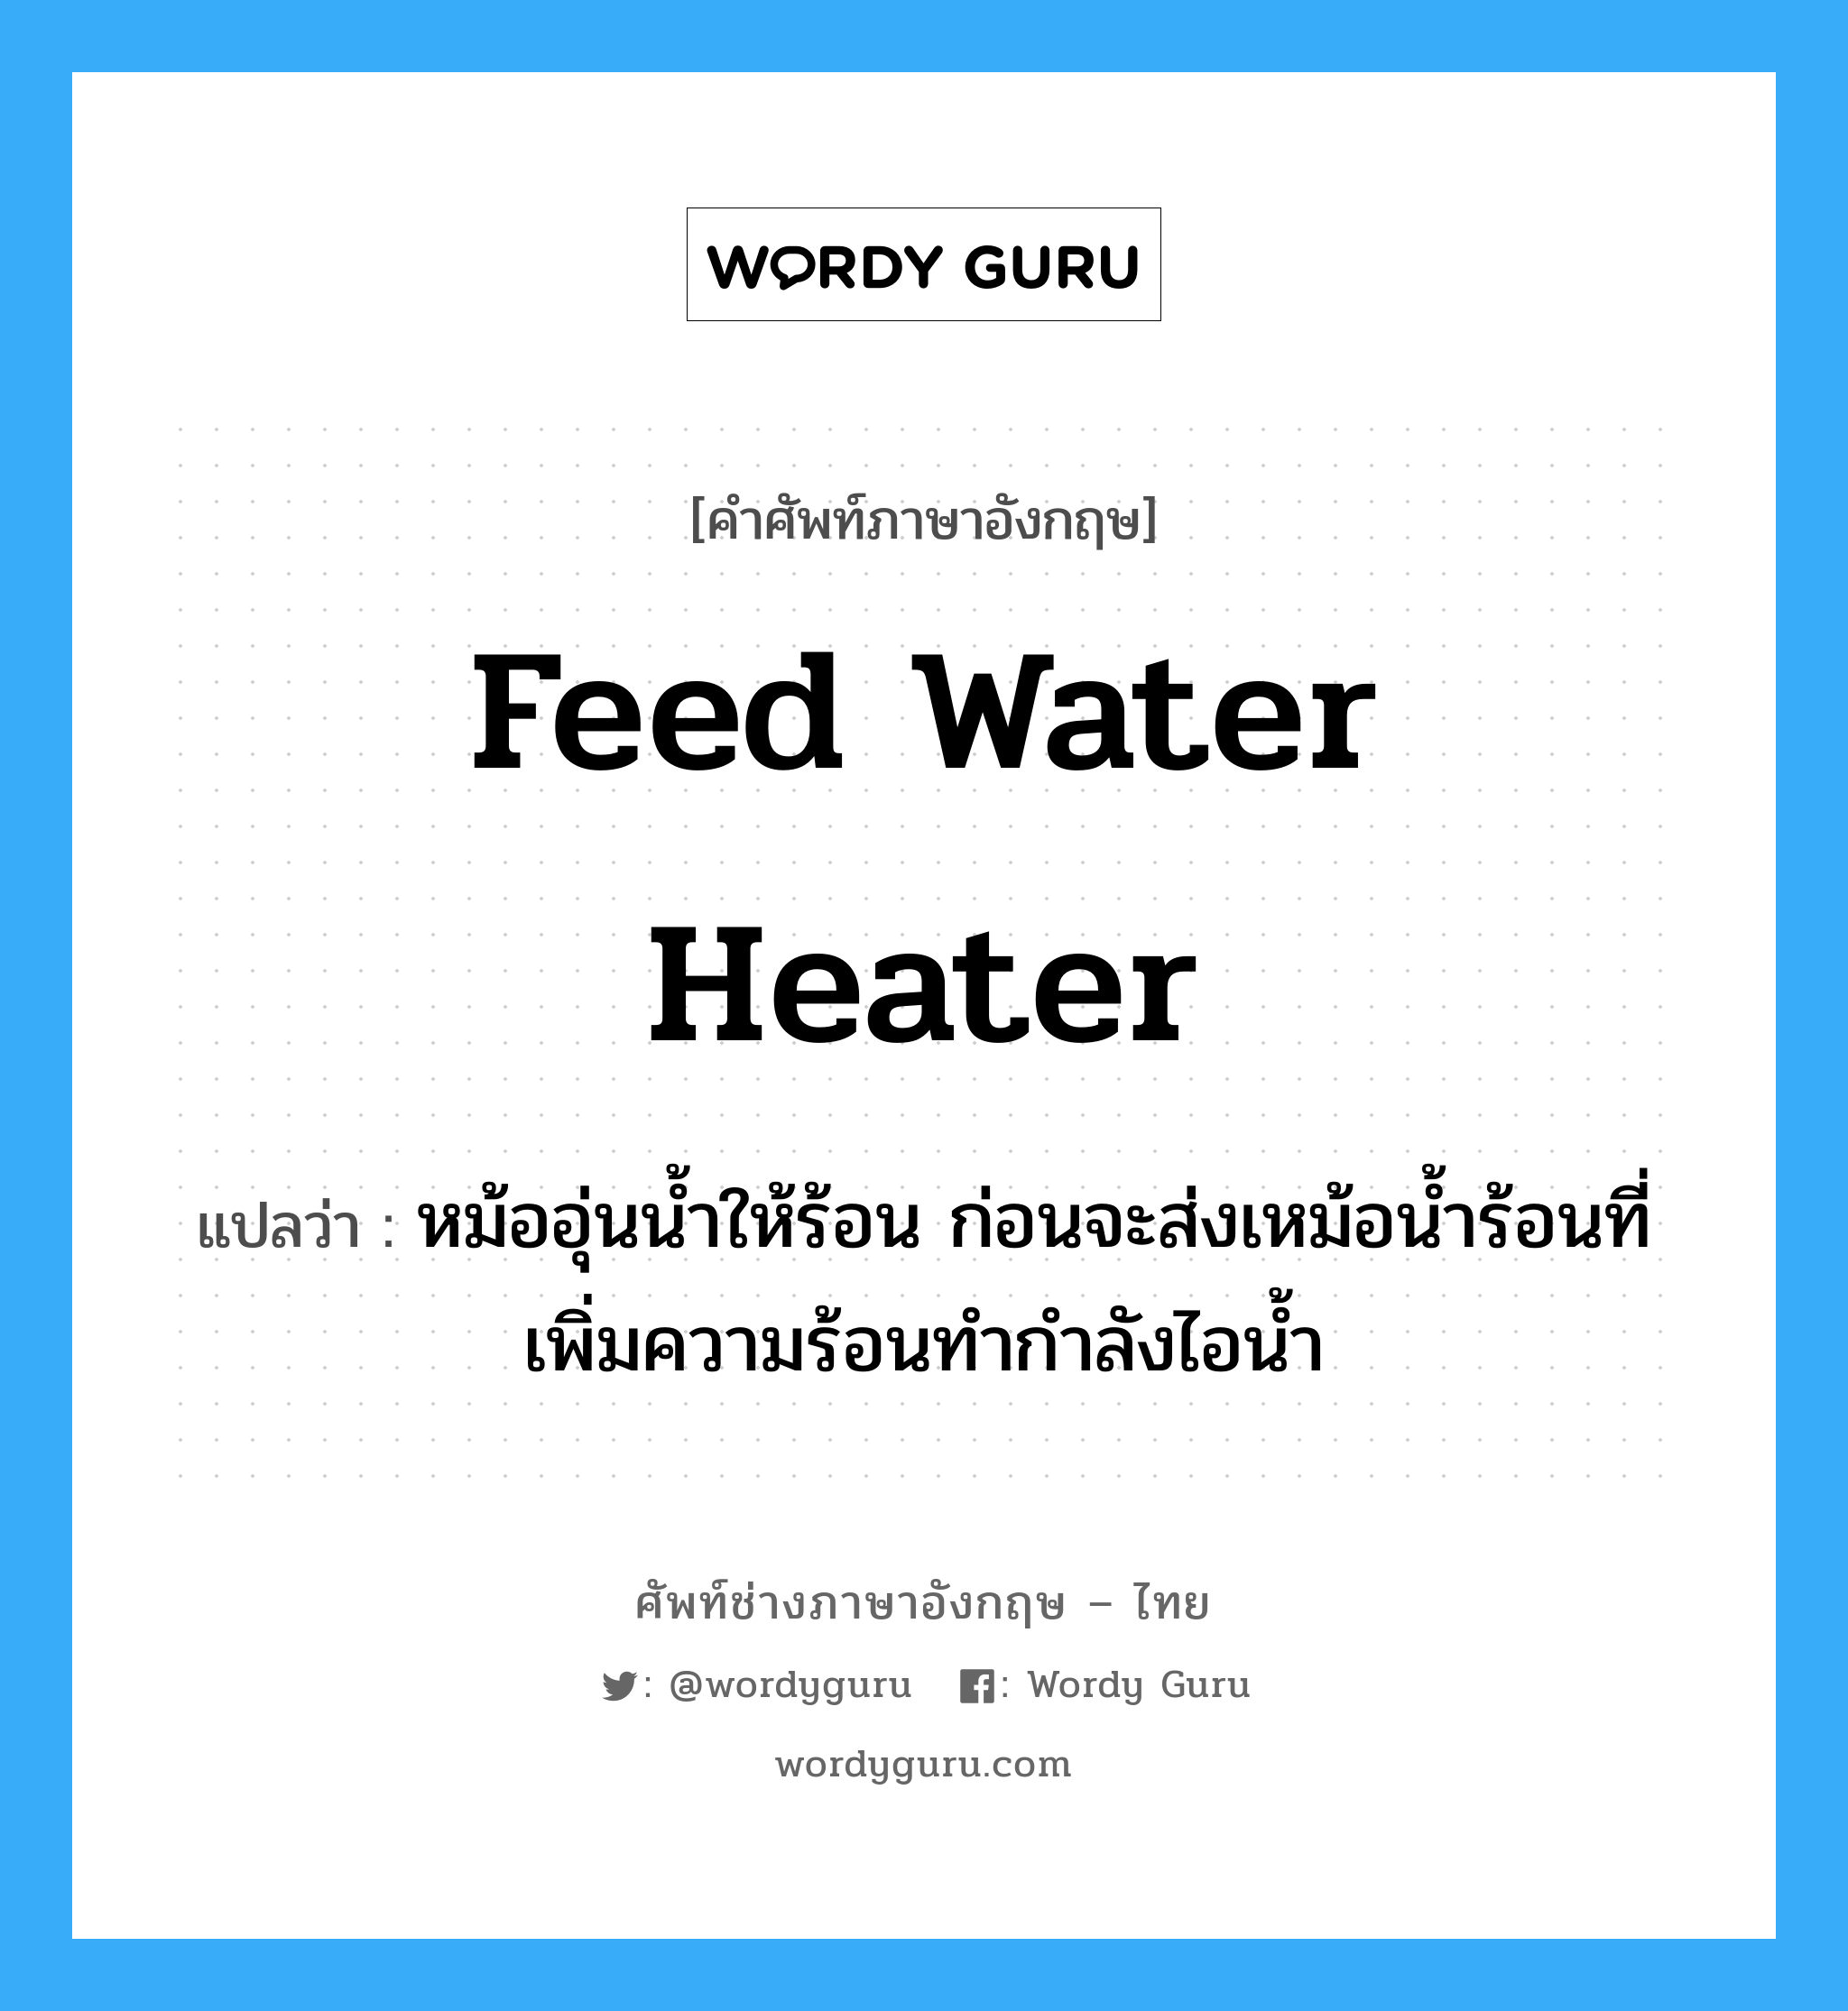 feed water heater แปลว่า?, คำศัพท์ช่างภาษาอังกฤษ - ไทย feed water heater คำศัพท์ภาษาอังกฤษ feed water heater แปลว่า หม้ออุ่นน้ำให้ร้อน ก่อนจะส่งเหม้อน้ำร้อนที่เพิ่มความร้อนทำกำลังไอน้ำ